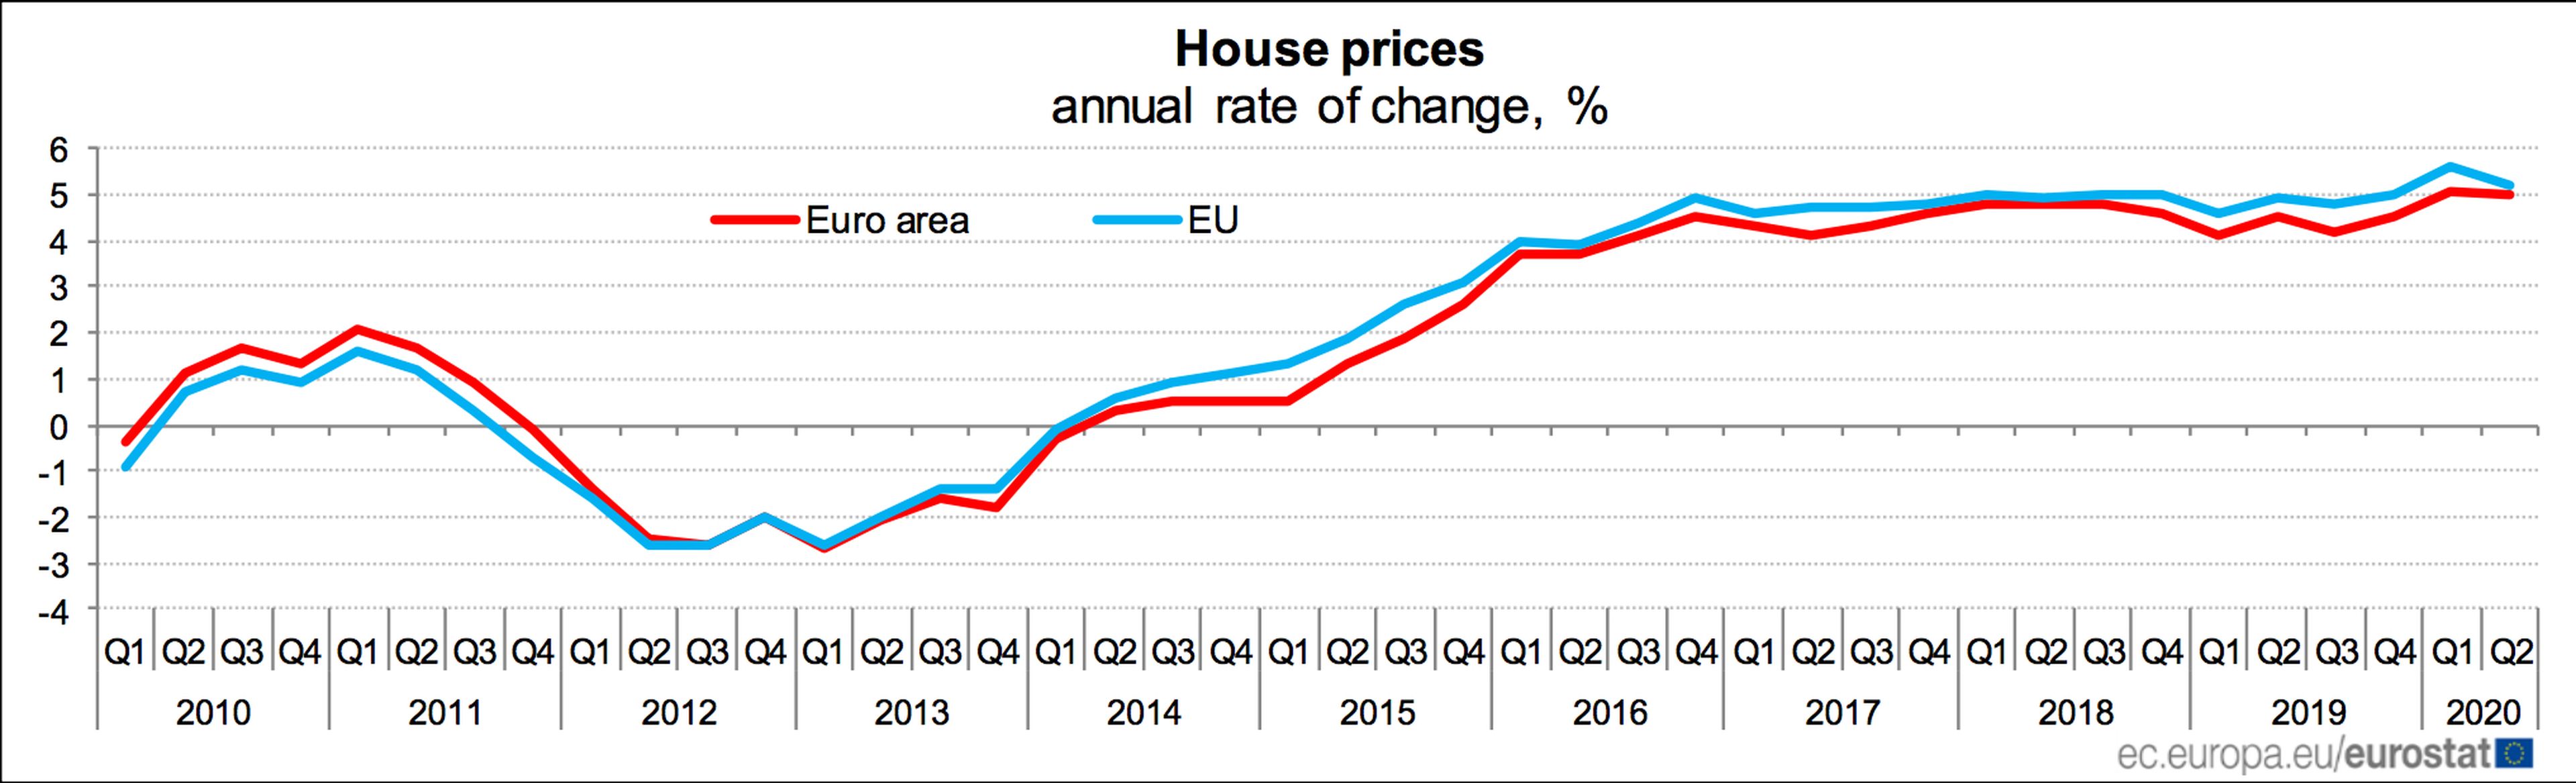 Evolución media de los precios de la vivienda en la UE y la eurozona desde 2010